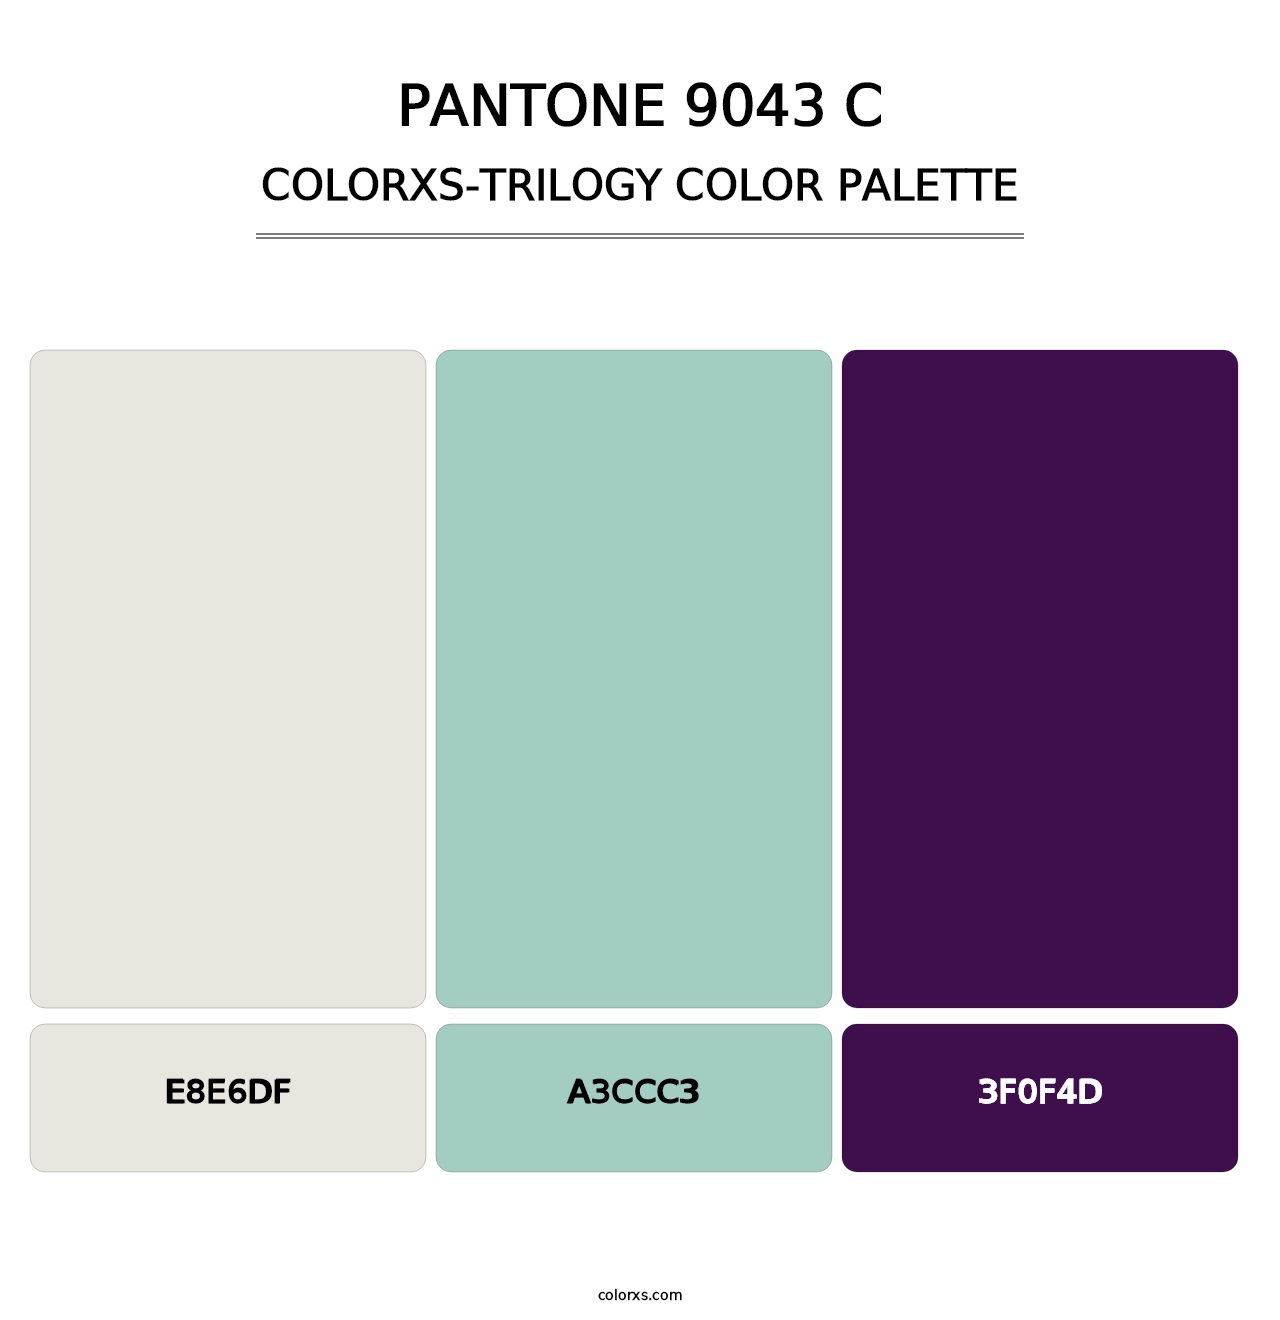 PANTONE 9043 C - Colorxs Trilogy Palette